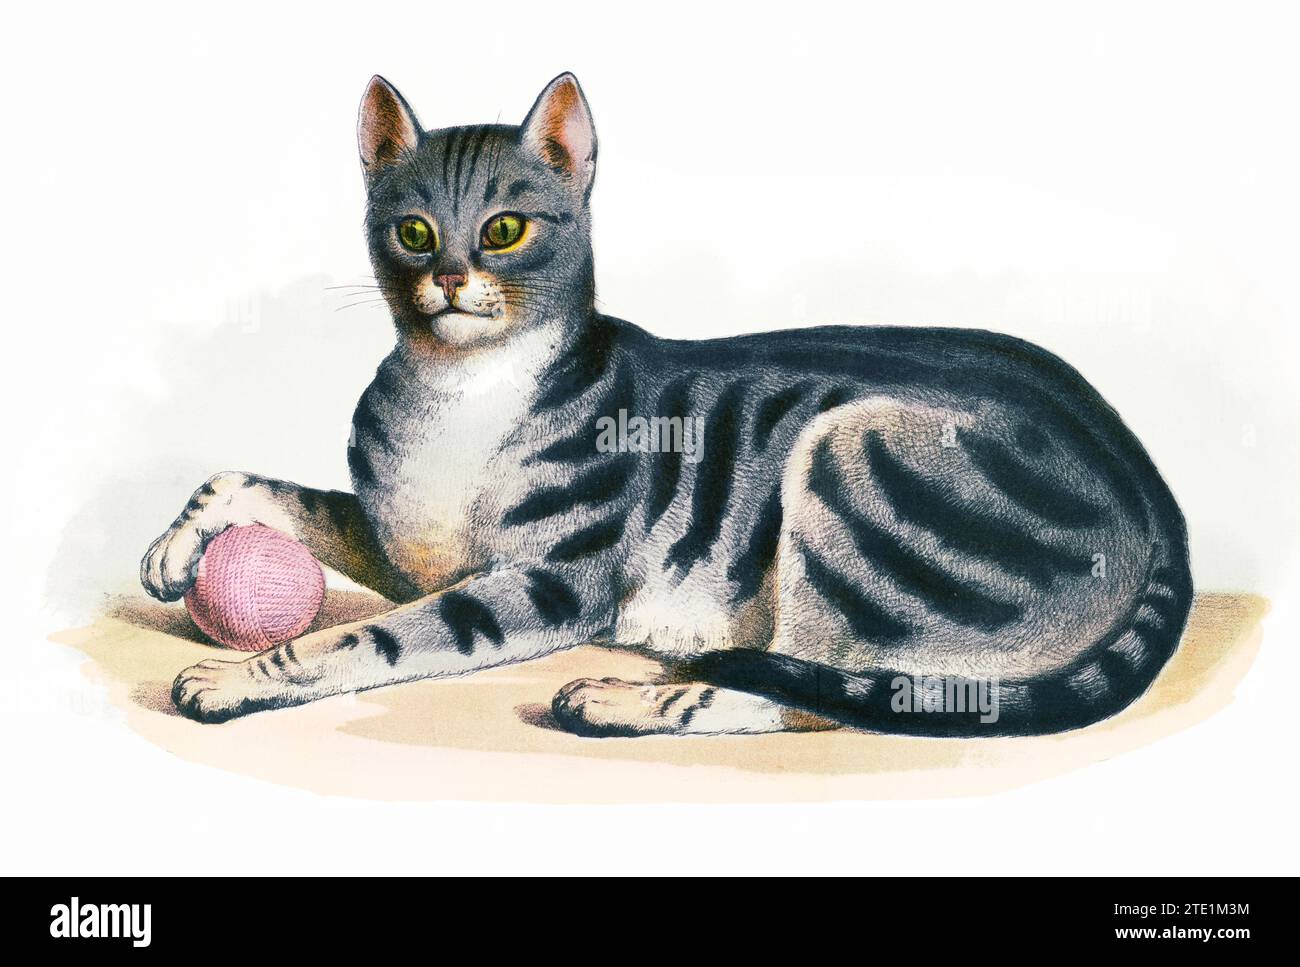 Illustrazione animale degli anni '1870 - il gatto, Felis domesticus. La stampa mostra una vista a sinistra di un gatto domestico, a tutta lunghezza, sdraiato, davanti, con una zampa appoggiata su una palla di filato, isolata su sfondo bianco. Foto Stock